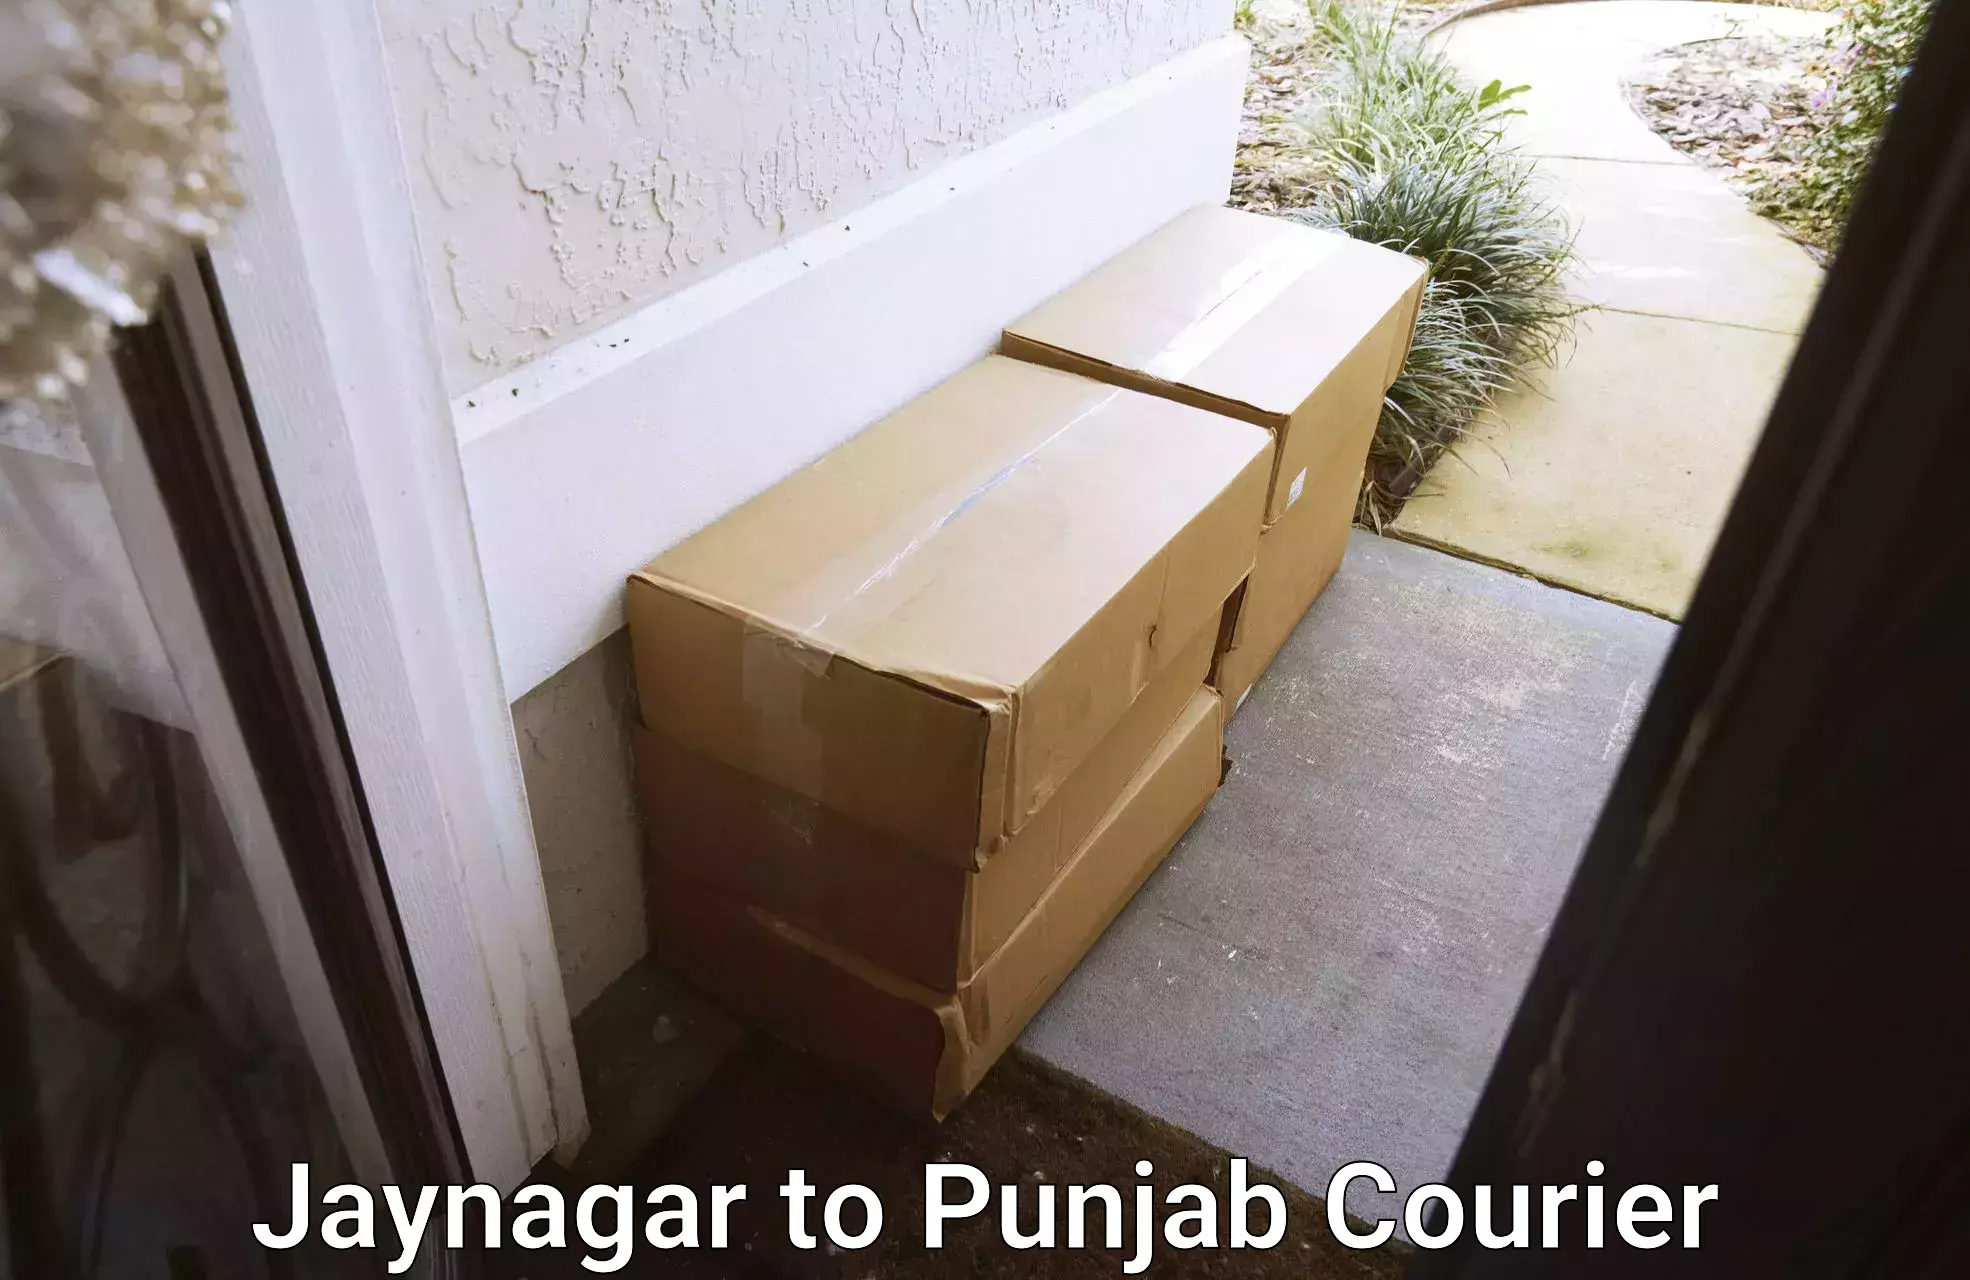 Full-service household moving Jaynagar to Rupnagar